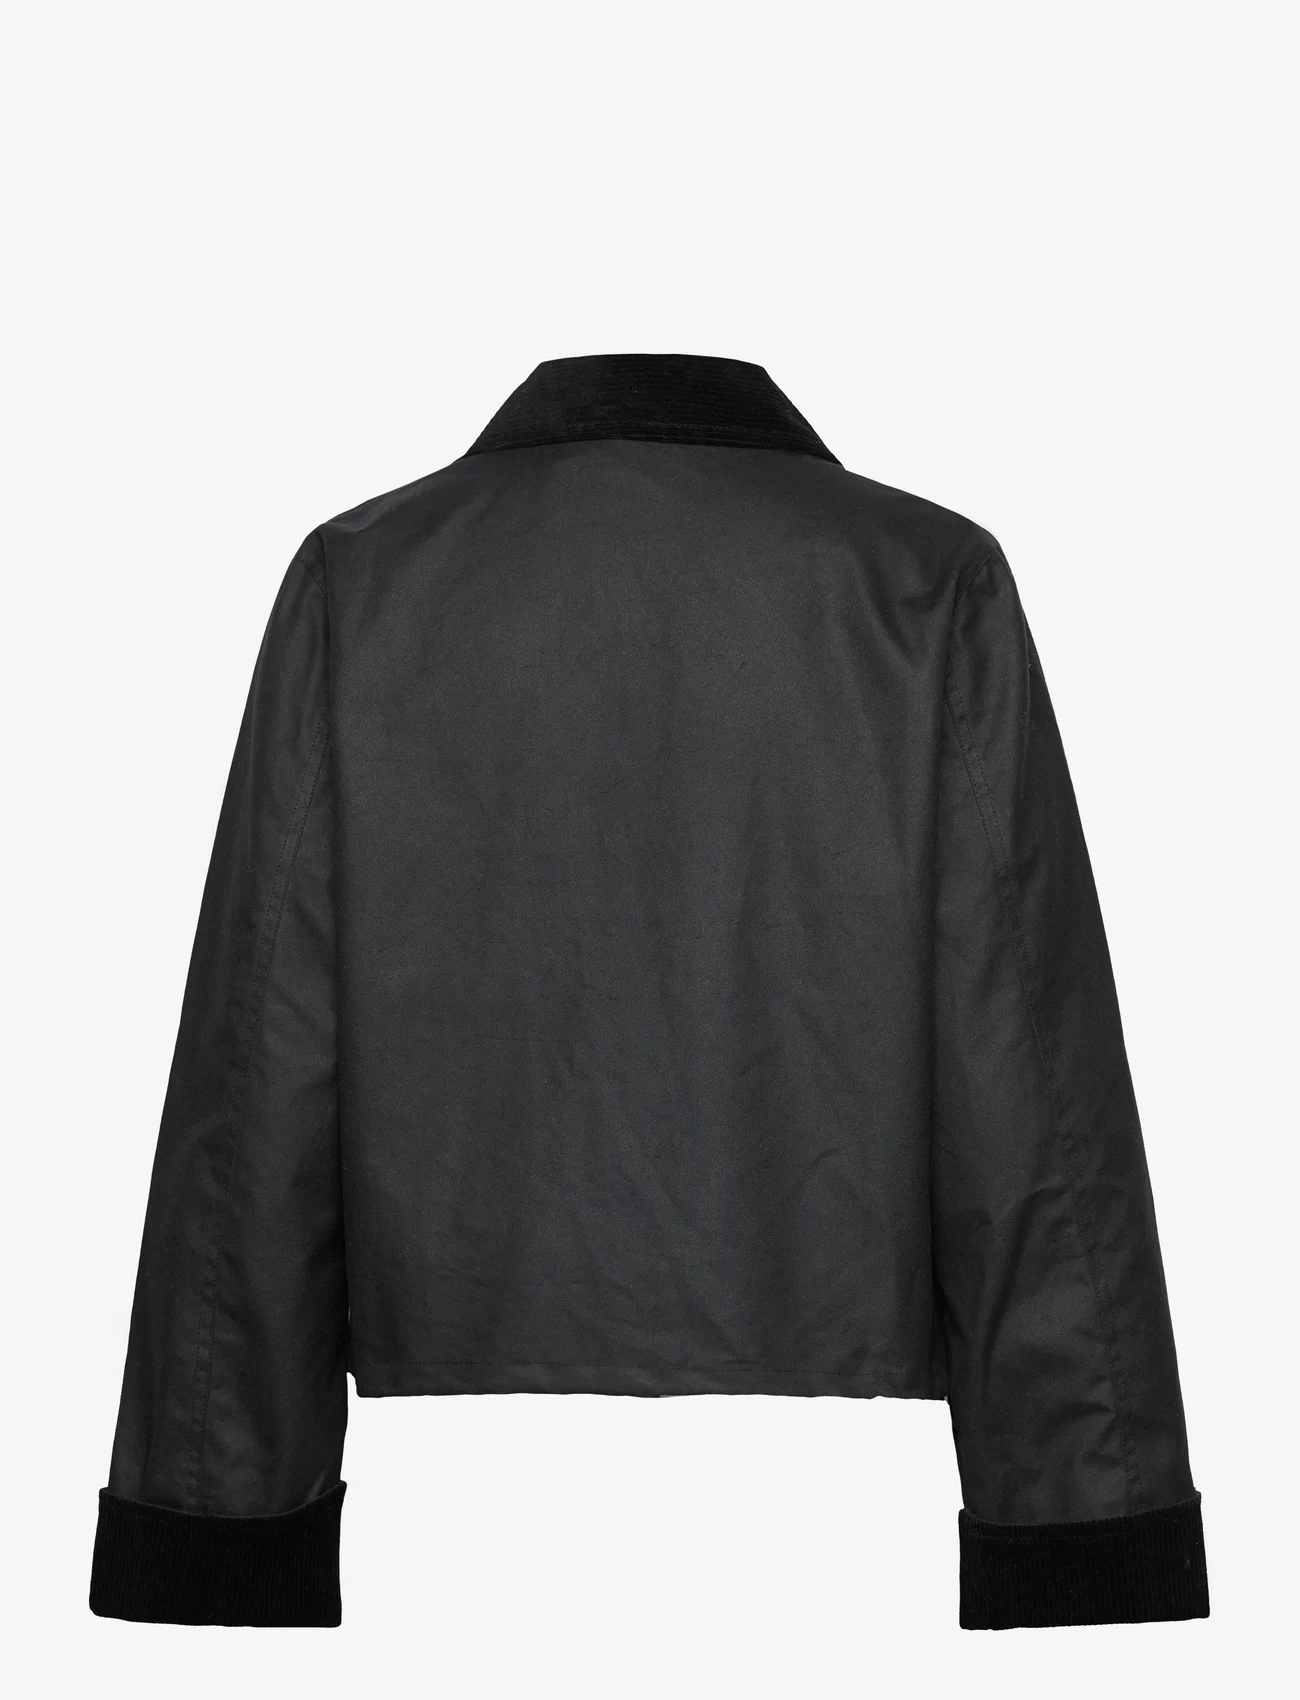 Brixtol Textiles - Sissel Wax - winter jacket - black - 1